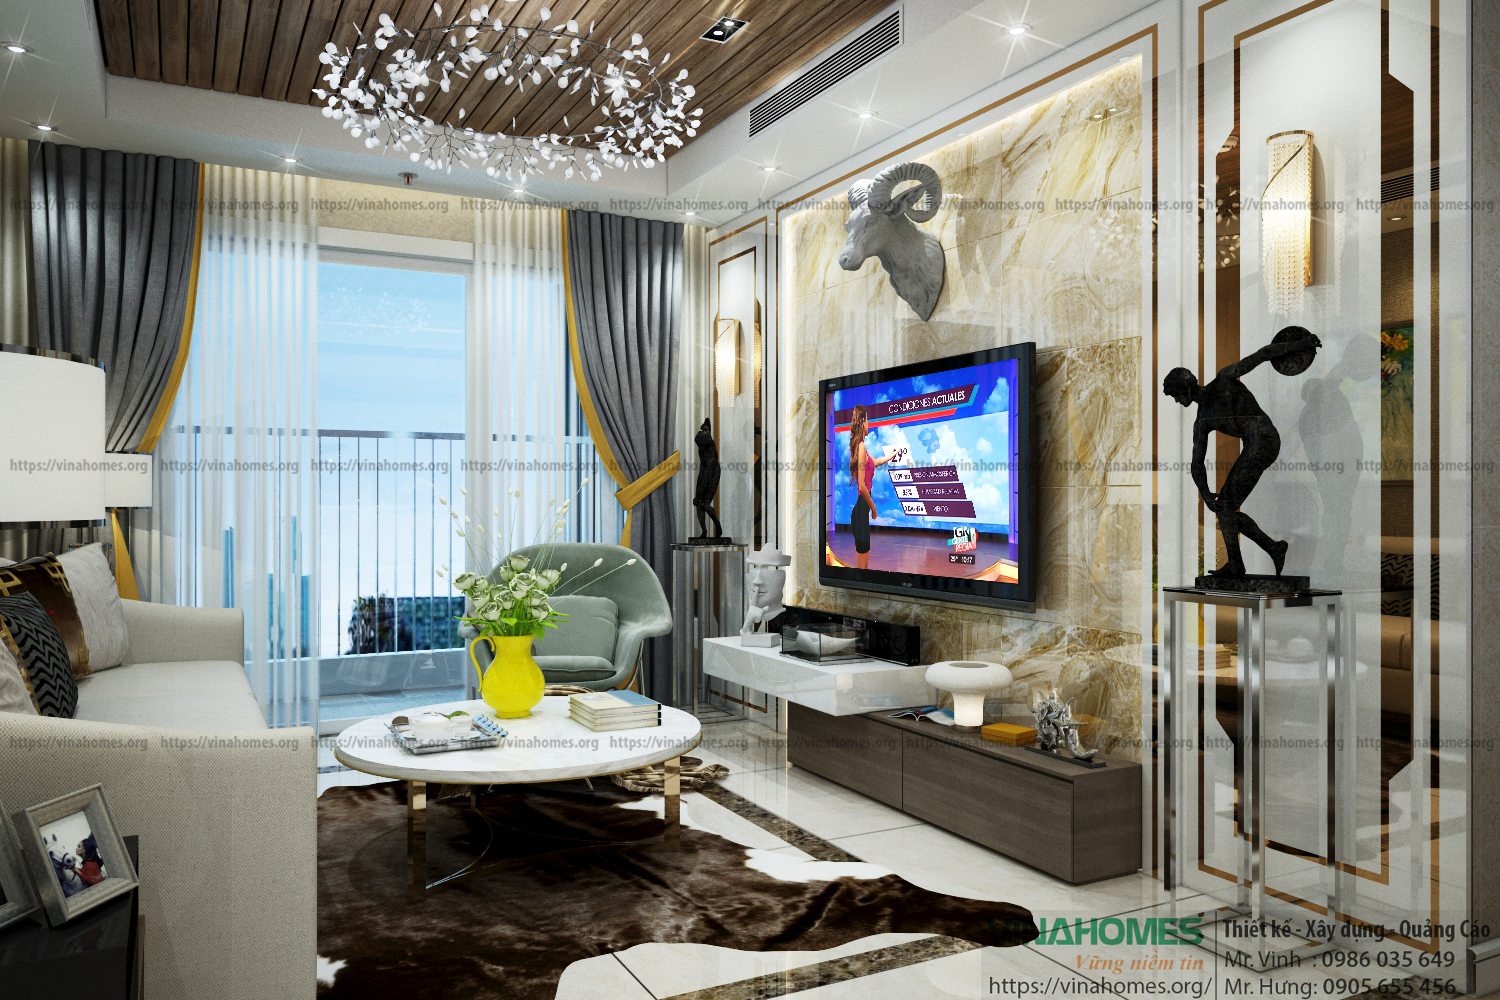 Thiết kế - thi công nội thất cho căn hộ chung cư Hà Đô Centrosa - Q.10 - TP. HCM